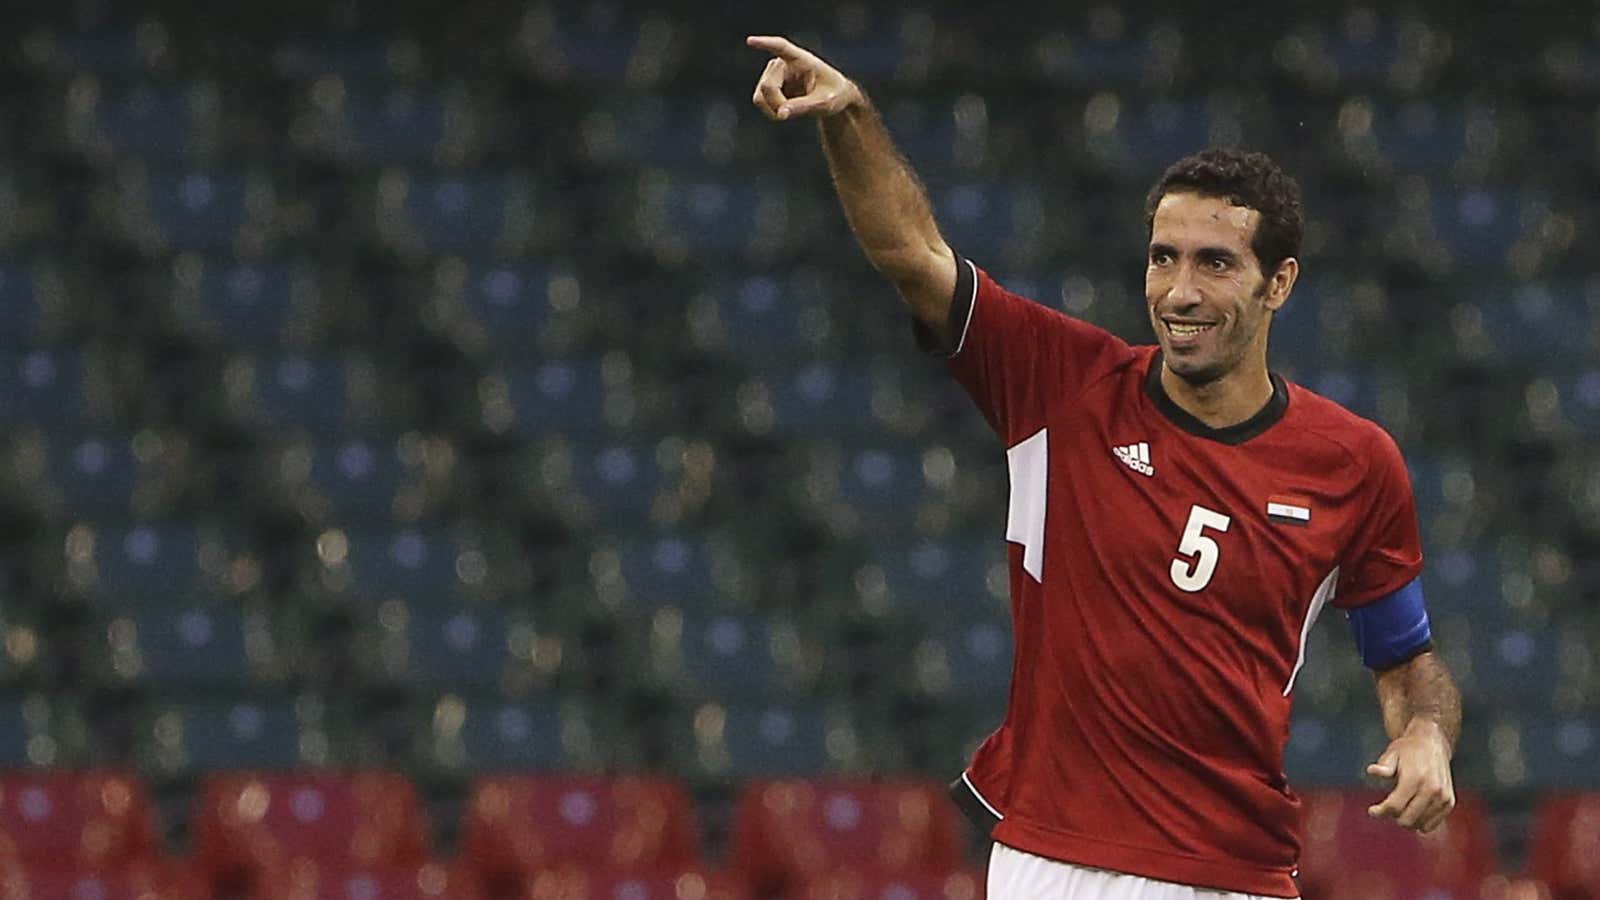 Former Egypt soccer star and captain Mohamed Aboutrika